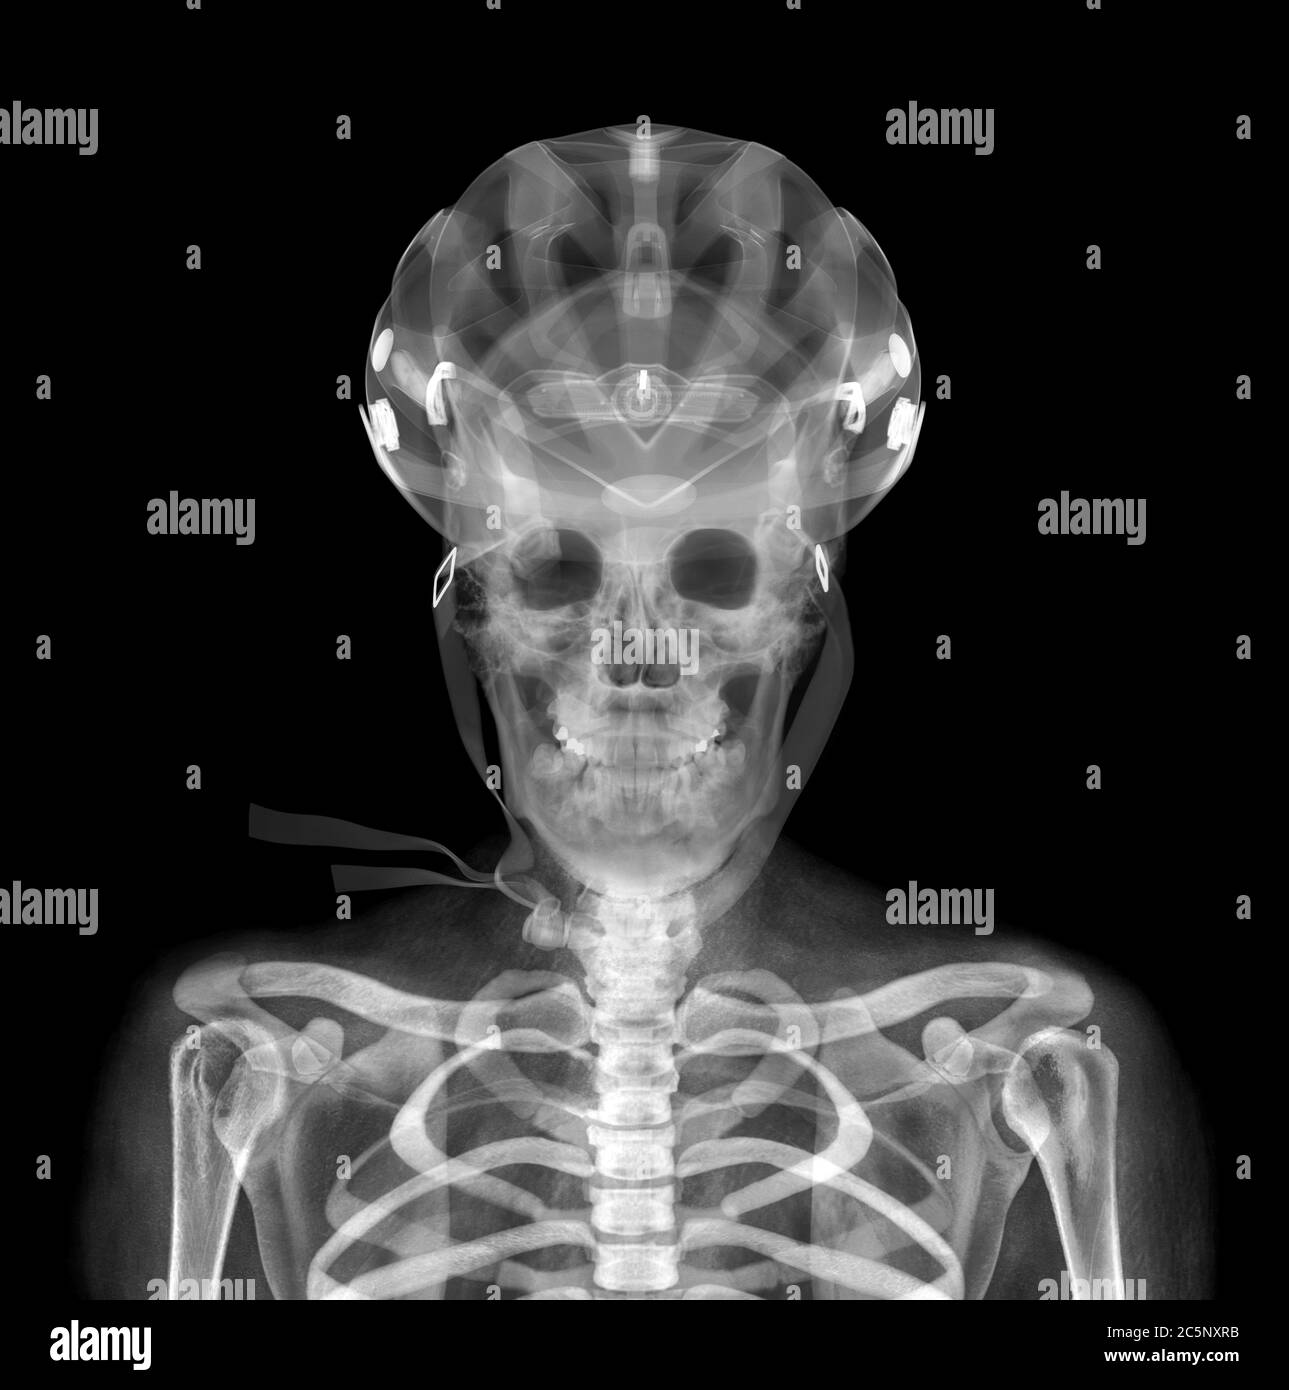 Skull and helmet, X-ray. Stock Photo